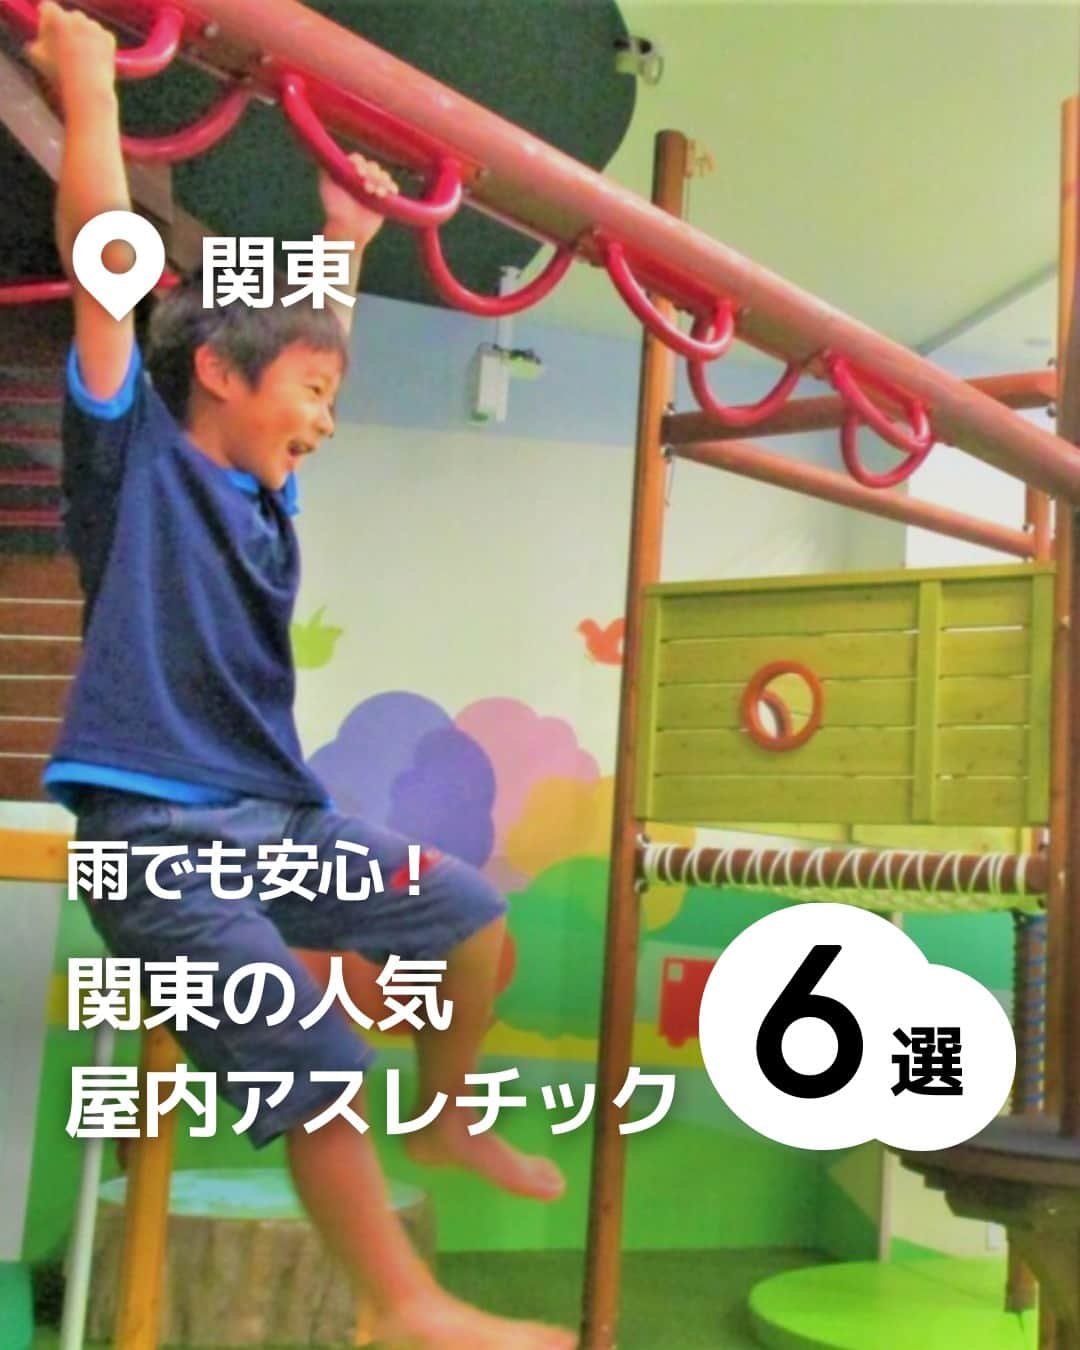 iko-yo（いこーよオフィシャル）さんのインスタグラム写真 - (iko-yo（いこーよオフィシャル）Instagram)「今回ピックアップしたのは「関東の人気屋内アスレチック 6選」 ーーーーーーーーーーーーーーーーーー 📍東京都八王子市 【CROSPO（クロスポ）八王子店】 時間内遊び放題で様々なアクティビティが楽しめる屋内施設で、トランポリンやボルダリングのほか、高さ9メートルの巨大クライミングタワーや、超本格的アスレチック「マッスルチャレンジ」など、思いきり体を動かして遊べるアクティビティが盛りだくさん。 0歳から10歳までの子供が安心して楽しめるキッズコーナーでは、大型ネット遊具や乗り物遊具などで楽しめます。  📍東京都日野市 【京王あそびの森 HUGHUG】 木のぬくもりがたっぷりと感じられる遊具が豊富な国内最大級の屋内遊び場です。 高さ約12m・直径約15mの巨大ネット遊具「ハグハグのき」は、そのスケールの大きさだけではなく、ネット上に雲のチューブやバランスボールなどの仕掛けもあり、子供たちに大人気です。 ほかにも、約45,000個のボールに埋もれて遊べる巨大ボールプールや、ボルダリングウォールなどもあり、館内の各所で体を思いきり動かして遊べます。  📍 東京都世田谷区 【PLAY! PARK ERIC CARLE（プレイパーク エリック・カール）】 エリック・カールの描く絵本の世界観をテーマとした、国内初のインドアプレイグラウンド施設です。 子供の好奇心をくすぐる多彩なエリアがあり、なかでもスウェーデン・HAGS社製の大型アスレチック遊具がある「Play Zone」では、思いきり体を動かして遊べます。  📍 埼玉県川口市 【ASOBooN（アソブーン）】 全国各地の遊び場をプロデュースしている「ボーネルンド」が手掛けた、子供が夢中で楽しめる工夫が満載の施設です。 特色の異なる7つのエリアがあり、ダイナミックに遊べるアスレチック遊具や弾むマットで走り回れるエアトラック、円形の透明なチューブの中に入って転がるサイバーホイールなど、思いきり体を動かして遊べます。 平日は時間無制限で入退場自由なので、隣接する公園や、レストラン・カフェ・売店でのお食事など、一日中楽しむことができます。  📍 埼玉県久喜市 【ソユーひみつの森 モラージュ菖蒲店】 森をテーマにした場内には、ハチの巣をイメージしたアスレチック遊具「ひみつバチの巣」があり、内部を上ったり下りたりして楽しめます。また、大きなすべり台やターザンロープもあり、思いきり体を動かせして遊ぶことができます。 ほかにも、大きなボールプールなども備えていますので、比較的低年齢の子供たちも楽しめます。  📍埼玉県越谷市 【あそびパークPLUS ナムコイオンレイクタウン店】 体を動かしたり砂浜気分で砂遊びができたりと、屋内ながら外遊び気分が味わえるのが魅力のスポットです。 場内には、思いきり体を動かして遊べる大型アスレチック遊具「森のアスレチック」に加え、デジタル技術を駆使して、木に登っての虫採りを疑似体験できる「屋内木のぼり 森の子」もあって、森で遊ぶような感覚で楽しめます。飛んだり跳ねたりして遊べる「イマジネーションヒルズ」もおすすめです。  ※2023年5月10日時点の情報です。 最新の情報は公式HPや「いこーよ」サイトでご確認ください。 ーーーーーーーーーーーーーーーーーーー おでかけ情報量は日本最大級！ 子どもとお出かけ情報サイト「いこーよ」 「親子でおでかけしたい場所」をご紹介させていただいています！  お子さんとのおでかけの思い出の写真を、このアカウントをフォローの上#いこーよ #いこーよおでかけ部 をつけてぜひ投稿してください。魅力的な写真は、いこーよ公式SNSで紹介させていただきます！  募集中タグ#いこーよ #いこーよおでかけ部  「子どもと行きたい！」と思ったら保存が便利！ プロフィールのURLから「いこーよ」のサイトに行くと、他の投稿やオトクな情報などが載っています♪ ☞ @ikoyo_odekake  #いこーよ #お出かけ #おでかけ #お出かけスポット #子連れ #こどものいる暮らし #子連れスポット #いこーよおでかけ部 #東京ママ#東京観光#東京旅行#埼玉ママ #埼玉観光 #埼玉旅行#屋内アスレチック#関東アスレチック#クロスポ八王子店#京王あそびの森 #playparkericcarle#asoboon#ソユーひみつの森#あそびパークplus」5月16日 19時01分 - ikoyo_odekake